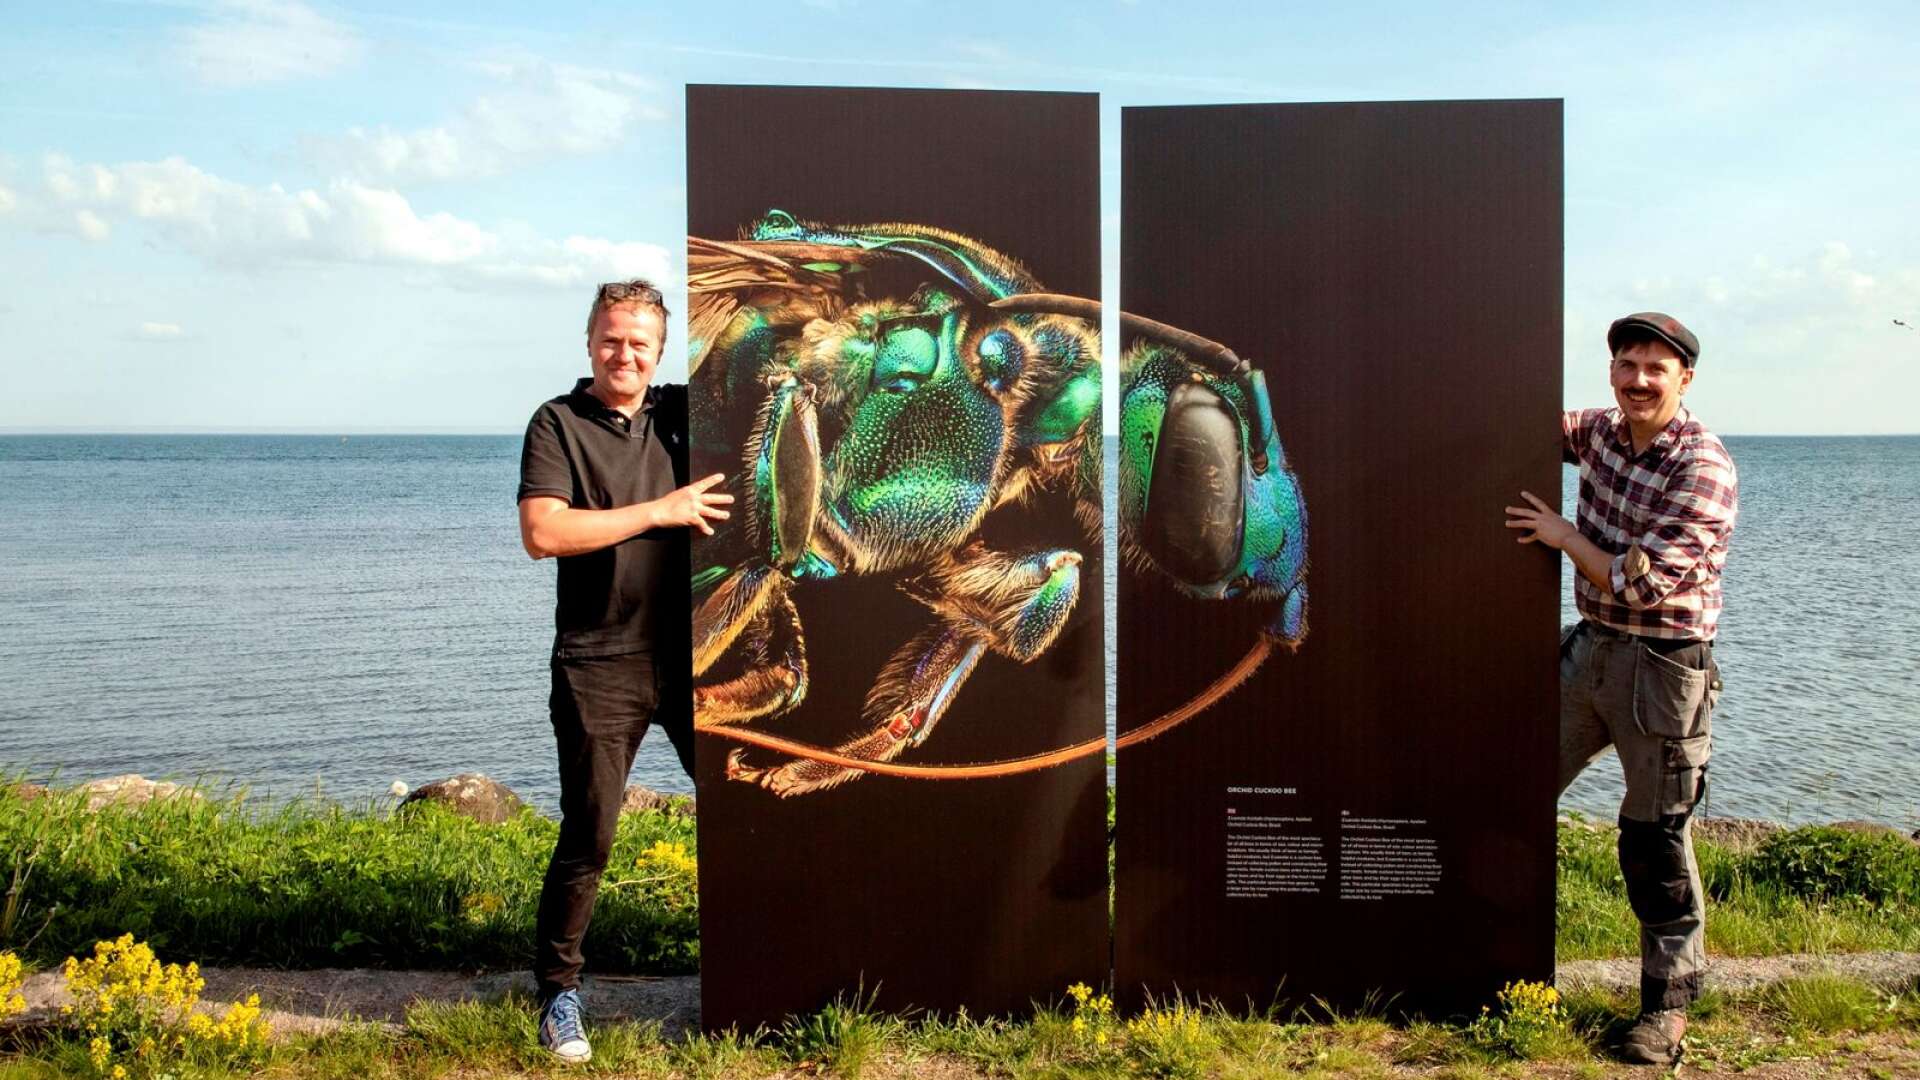 Projektledare Per Olsson visar tillsammans med konstruktören Axel Grenabo upp ett av sommarens dragplåster i utomhusutställningen om insekter.